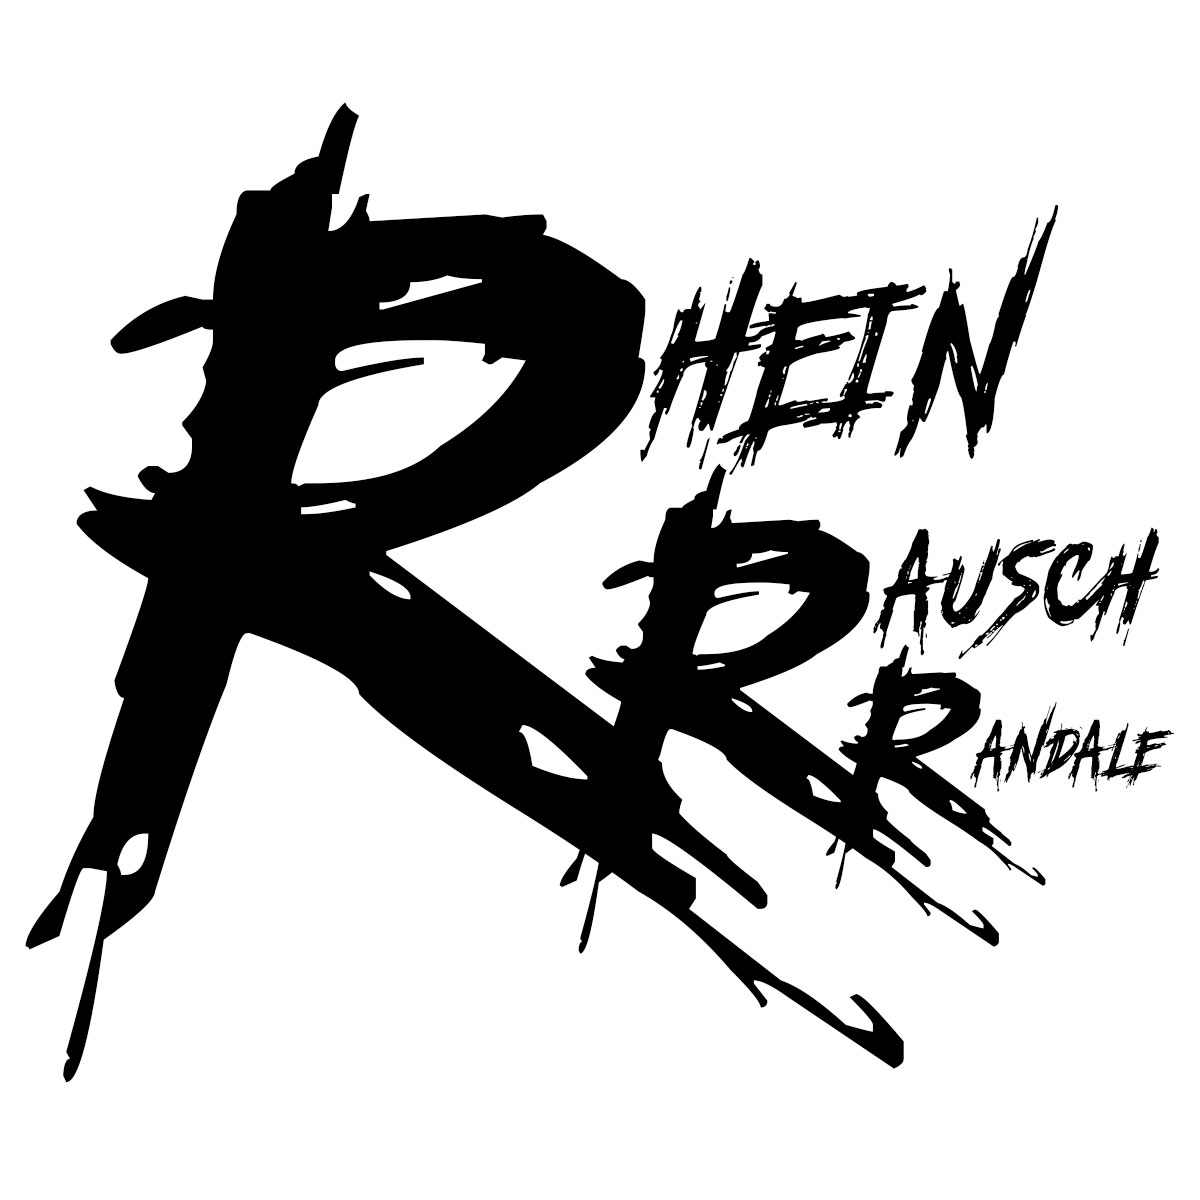 #Rhein #Rausch #Randale